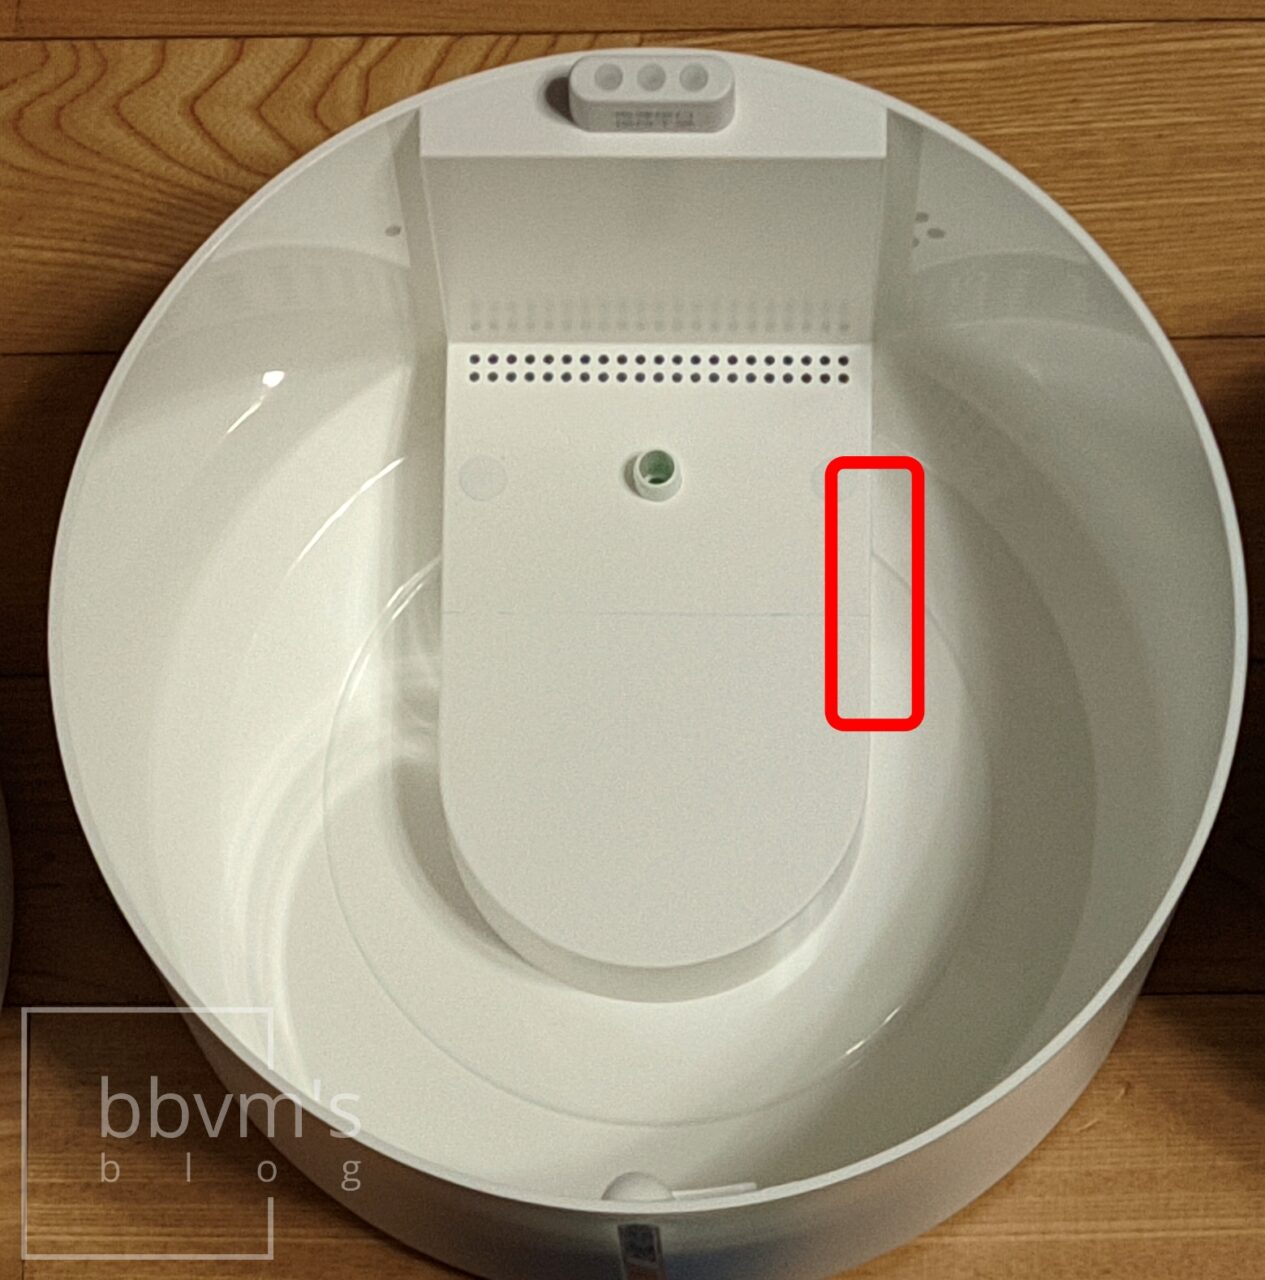 Xiaomi Humidifier Water Level Sensor